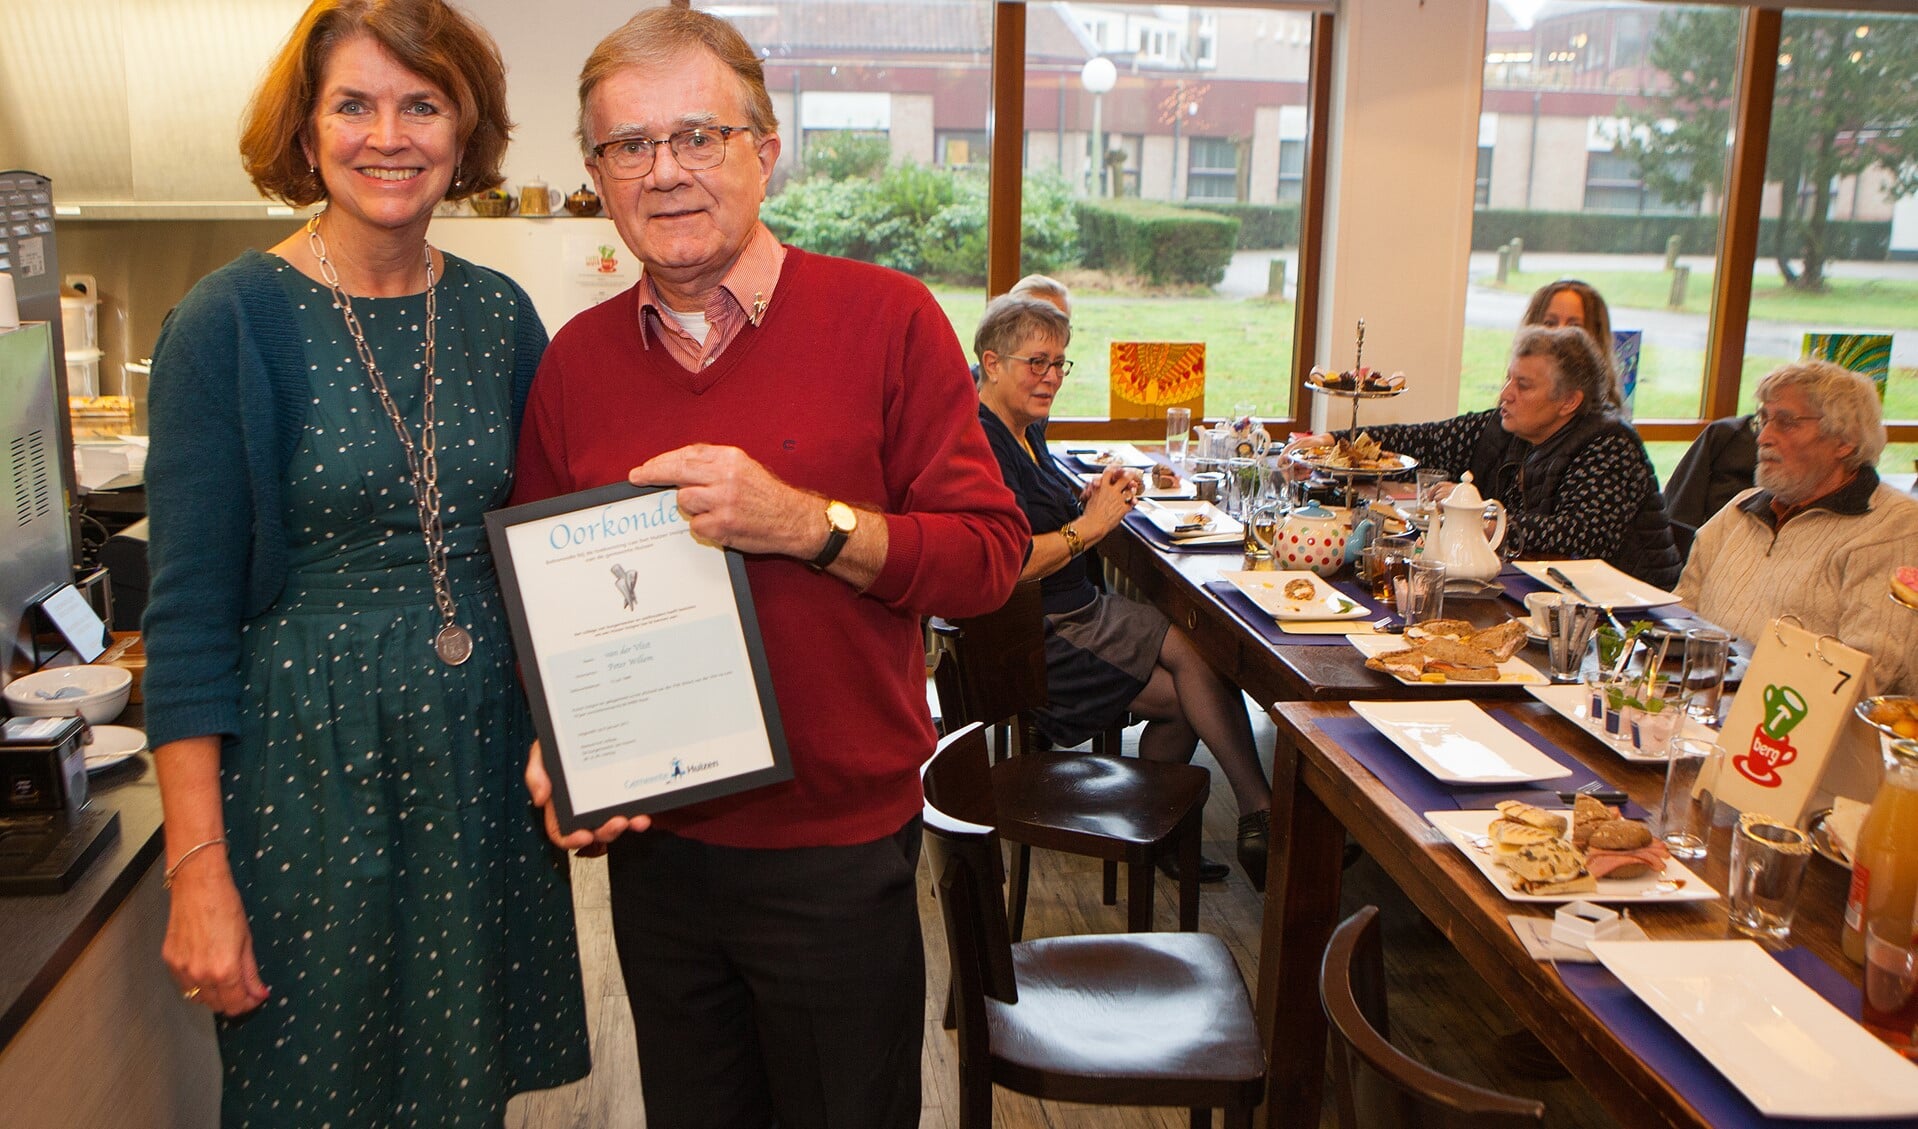 Loco-burgemeester Janny Bakker verraste Peter van der Vlist met het Huizer Insigne tijdens een high tea van de WMO-raad.